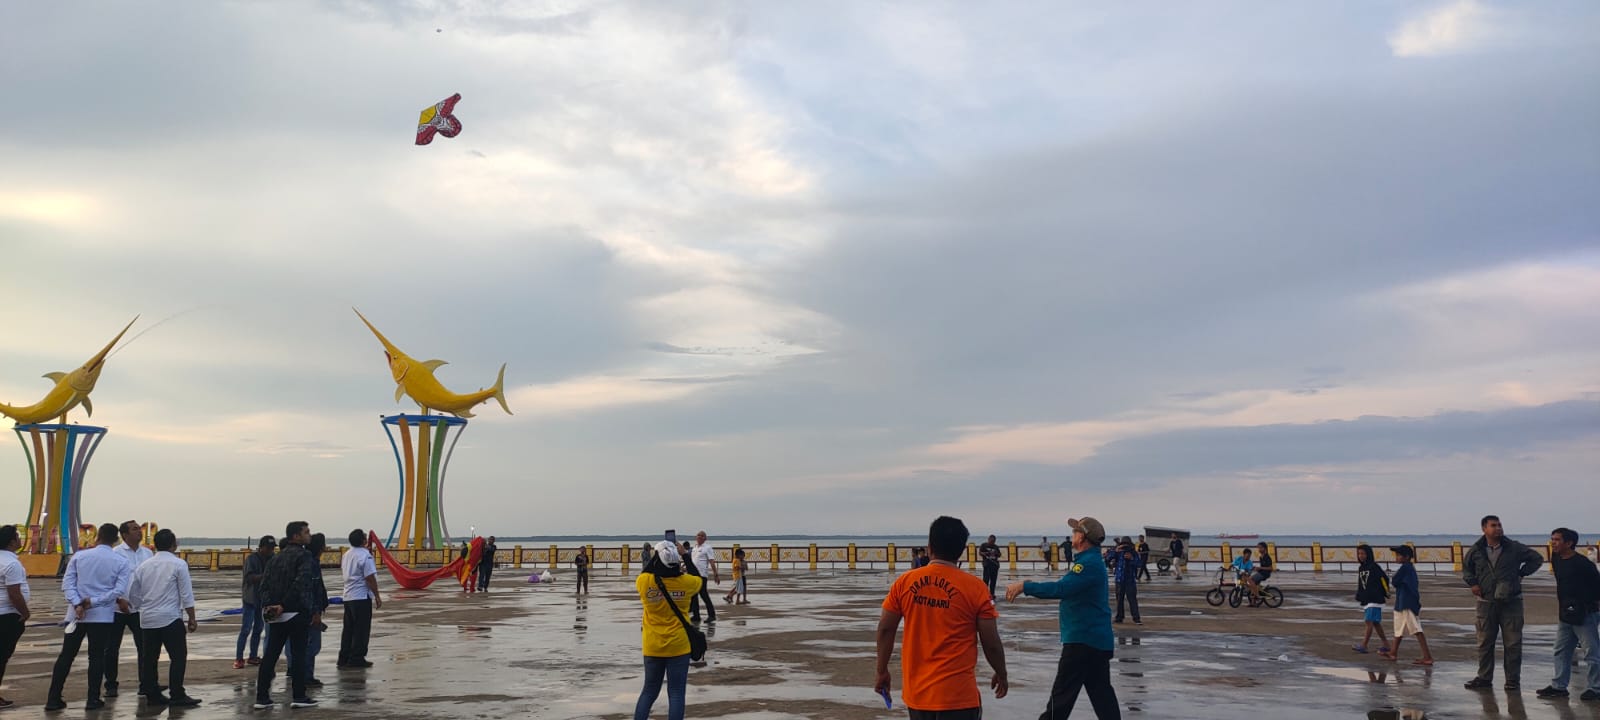 Bupati Kotabaru Sayed Jafar saat menerbangkan Layang-layang dalam Kite festival 2022 di Siring Laut. (Sumber Foto: Cah/Koranbanjar.net)